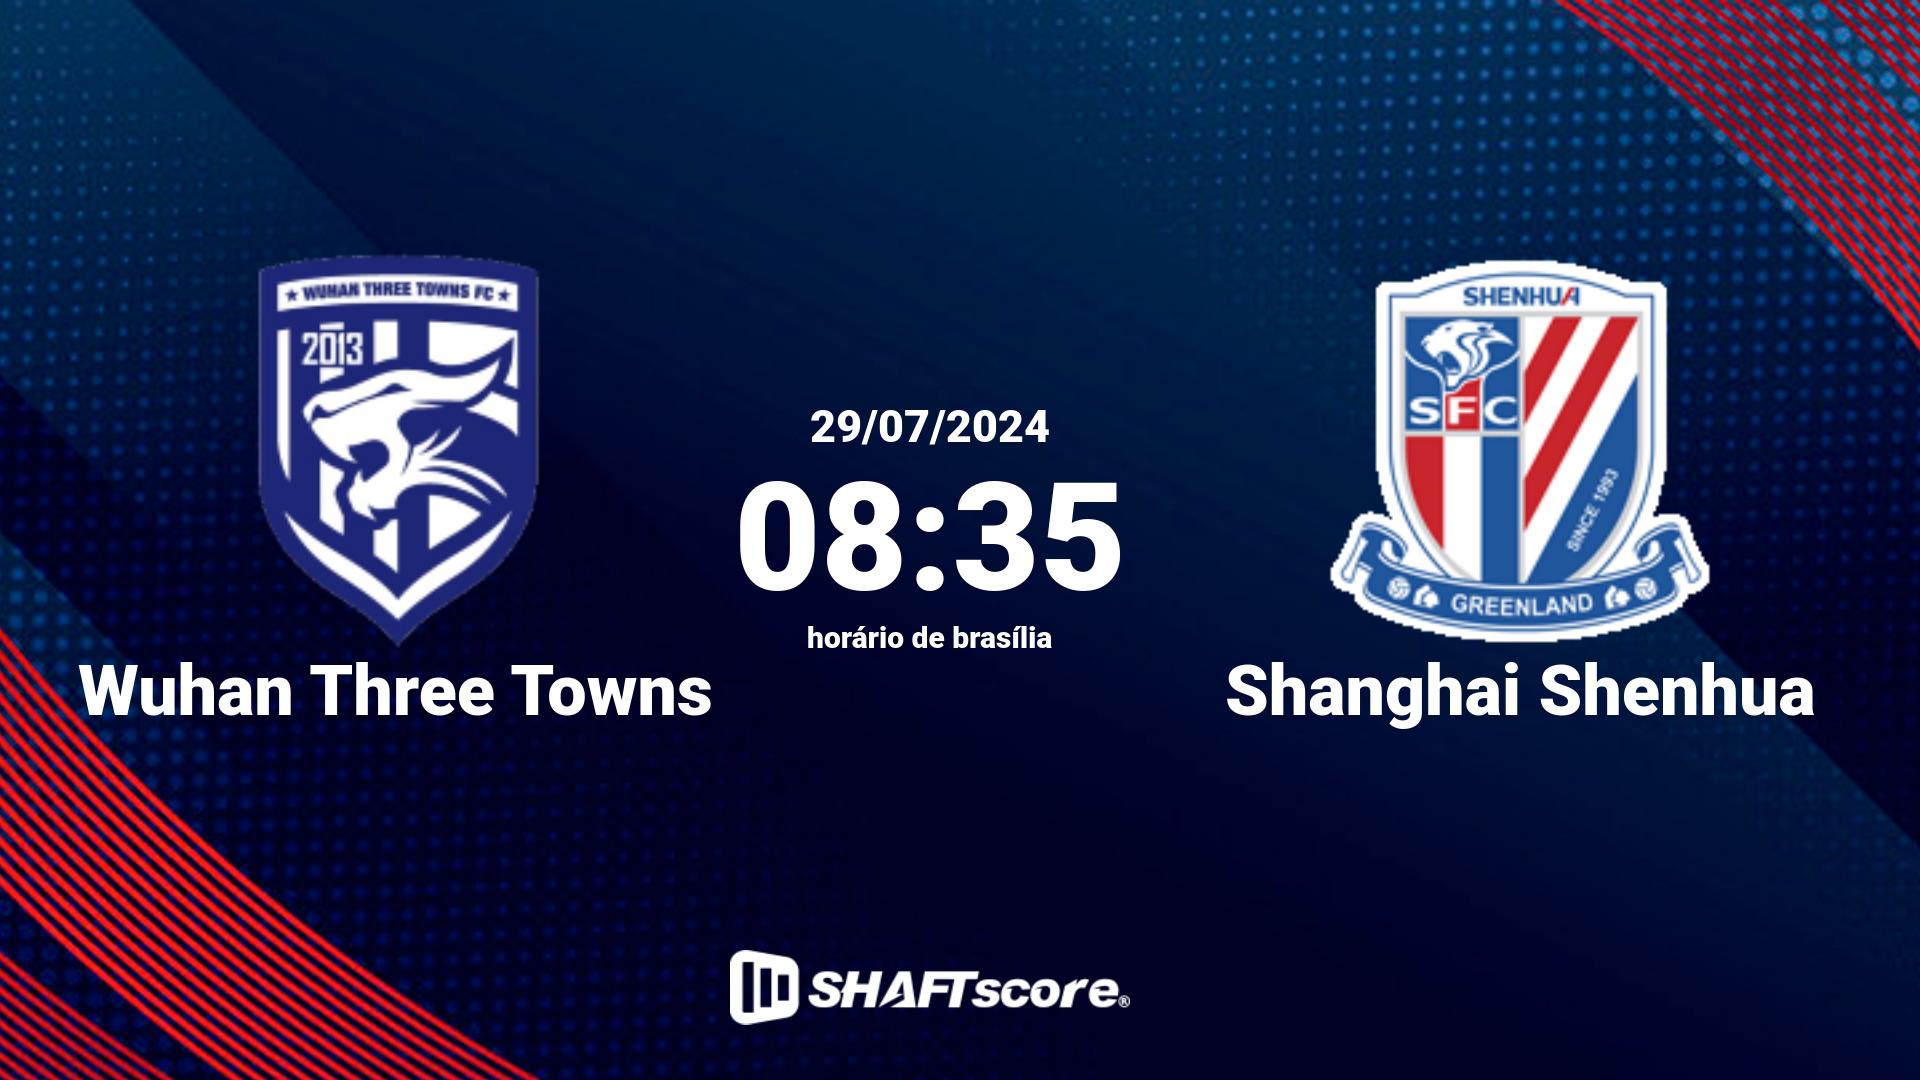 Estatísticas do jogo Wuhan Three Towns vs Shanghai Shenhua 29.07 08:35